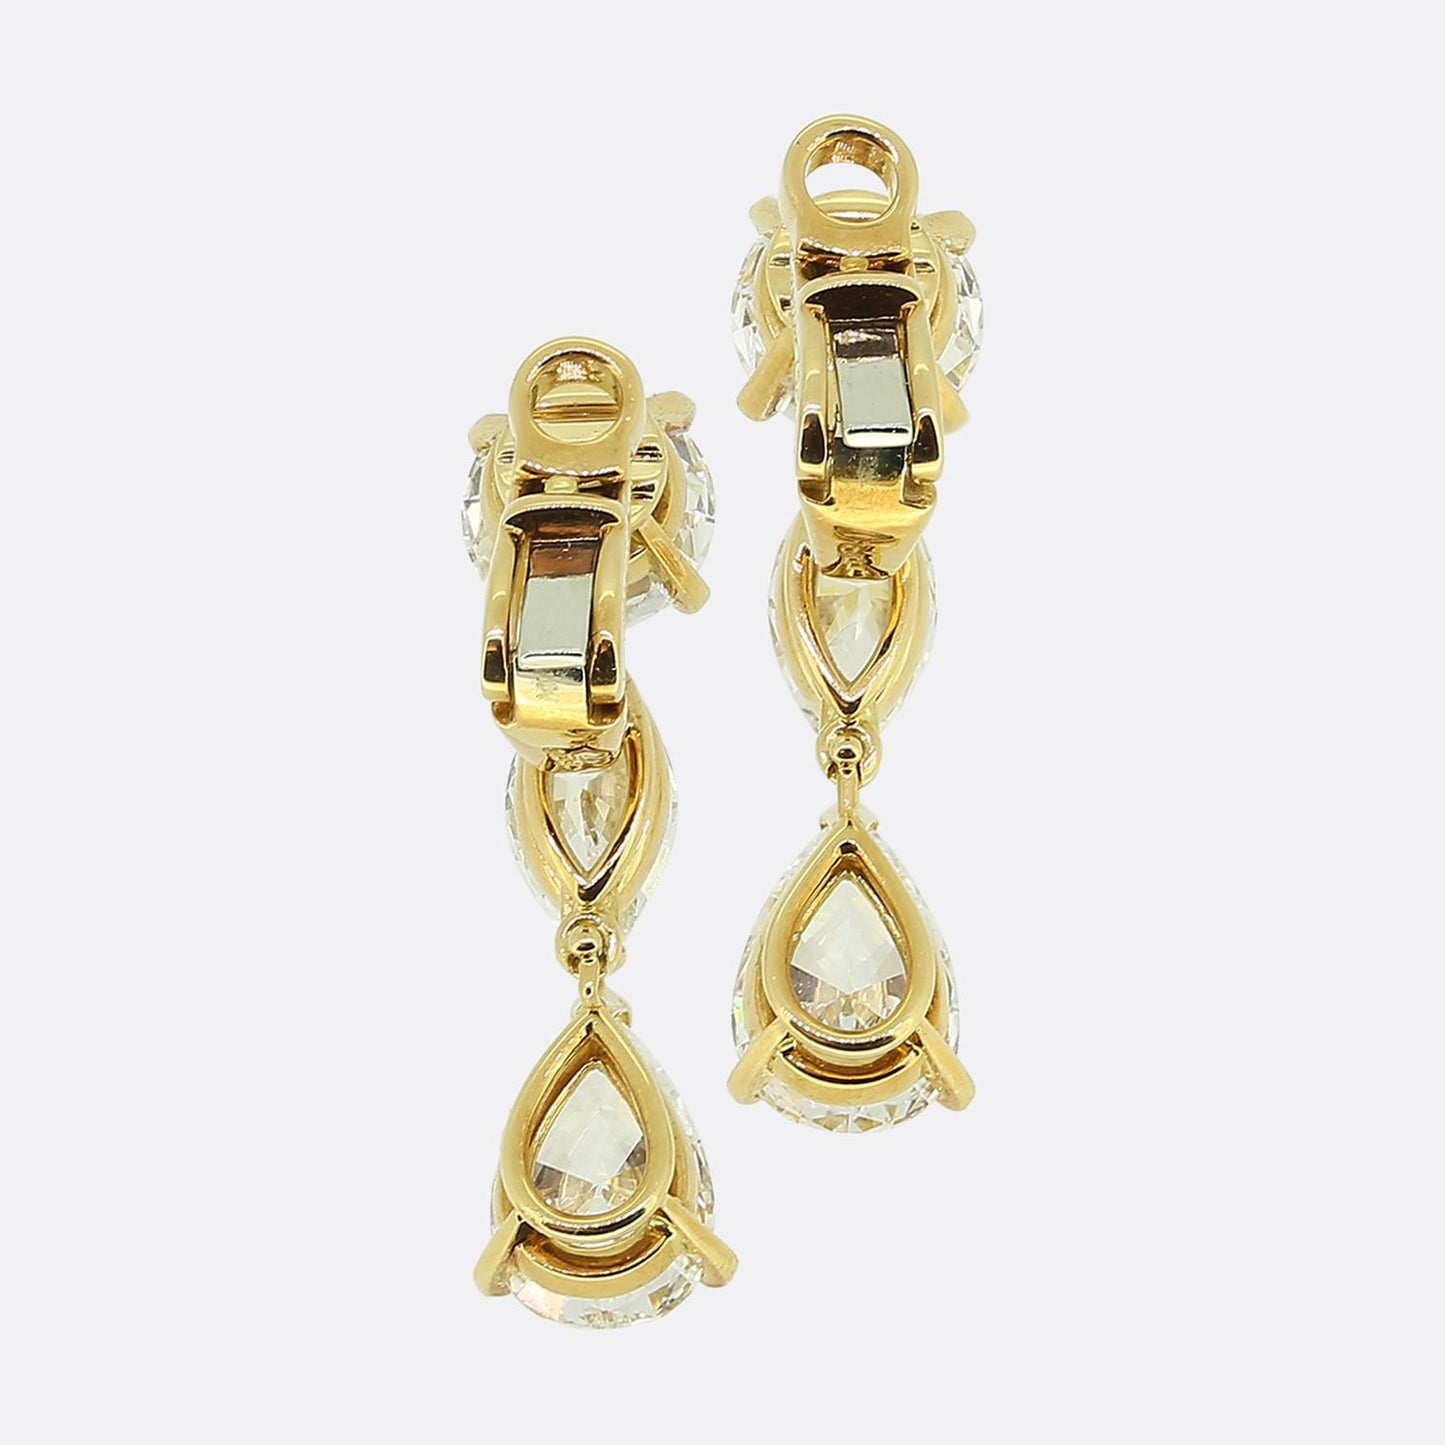 Cartier Diamond Drop Earrings